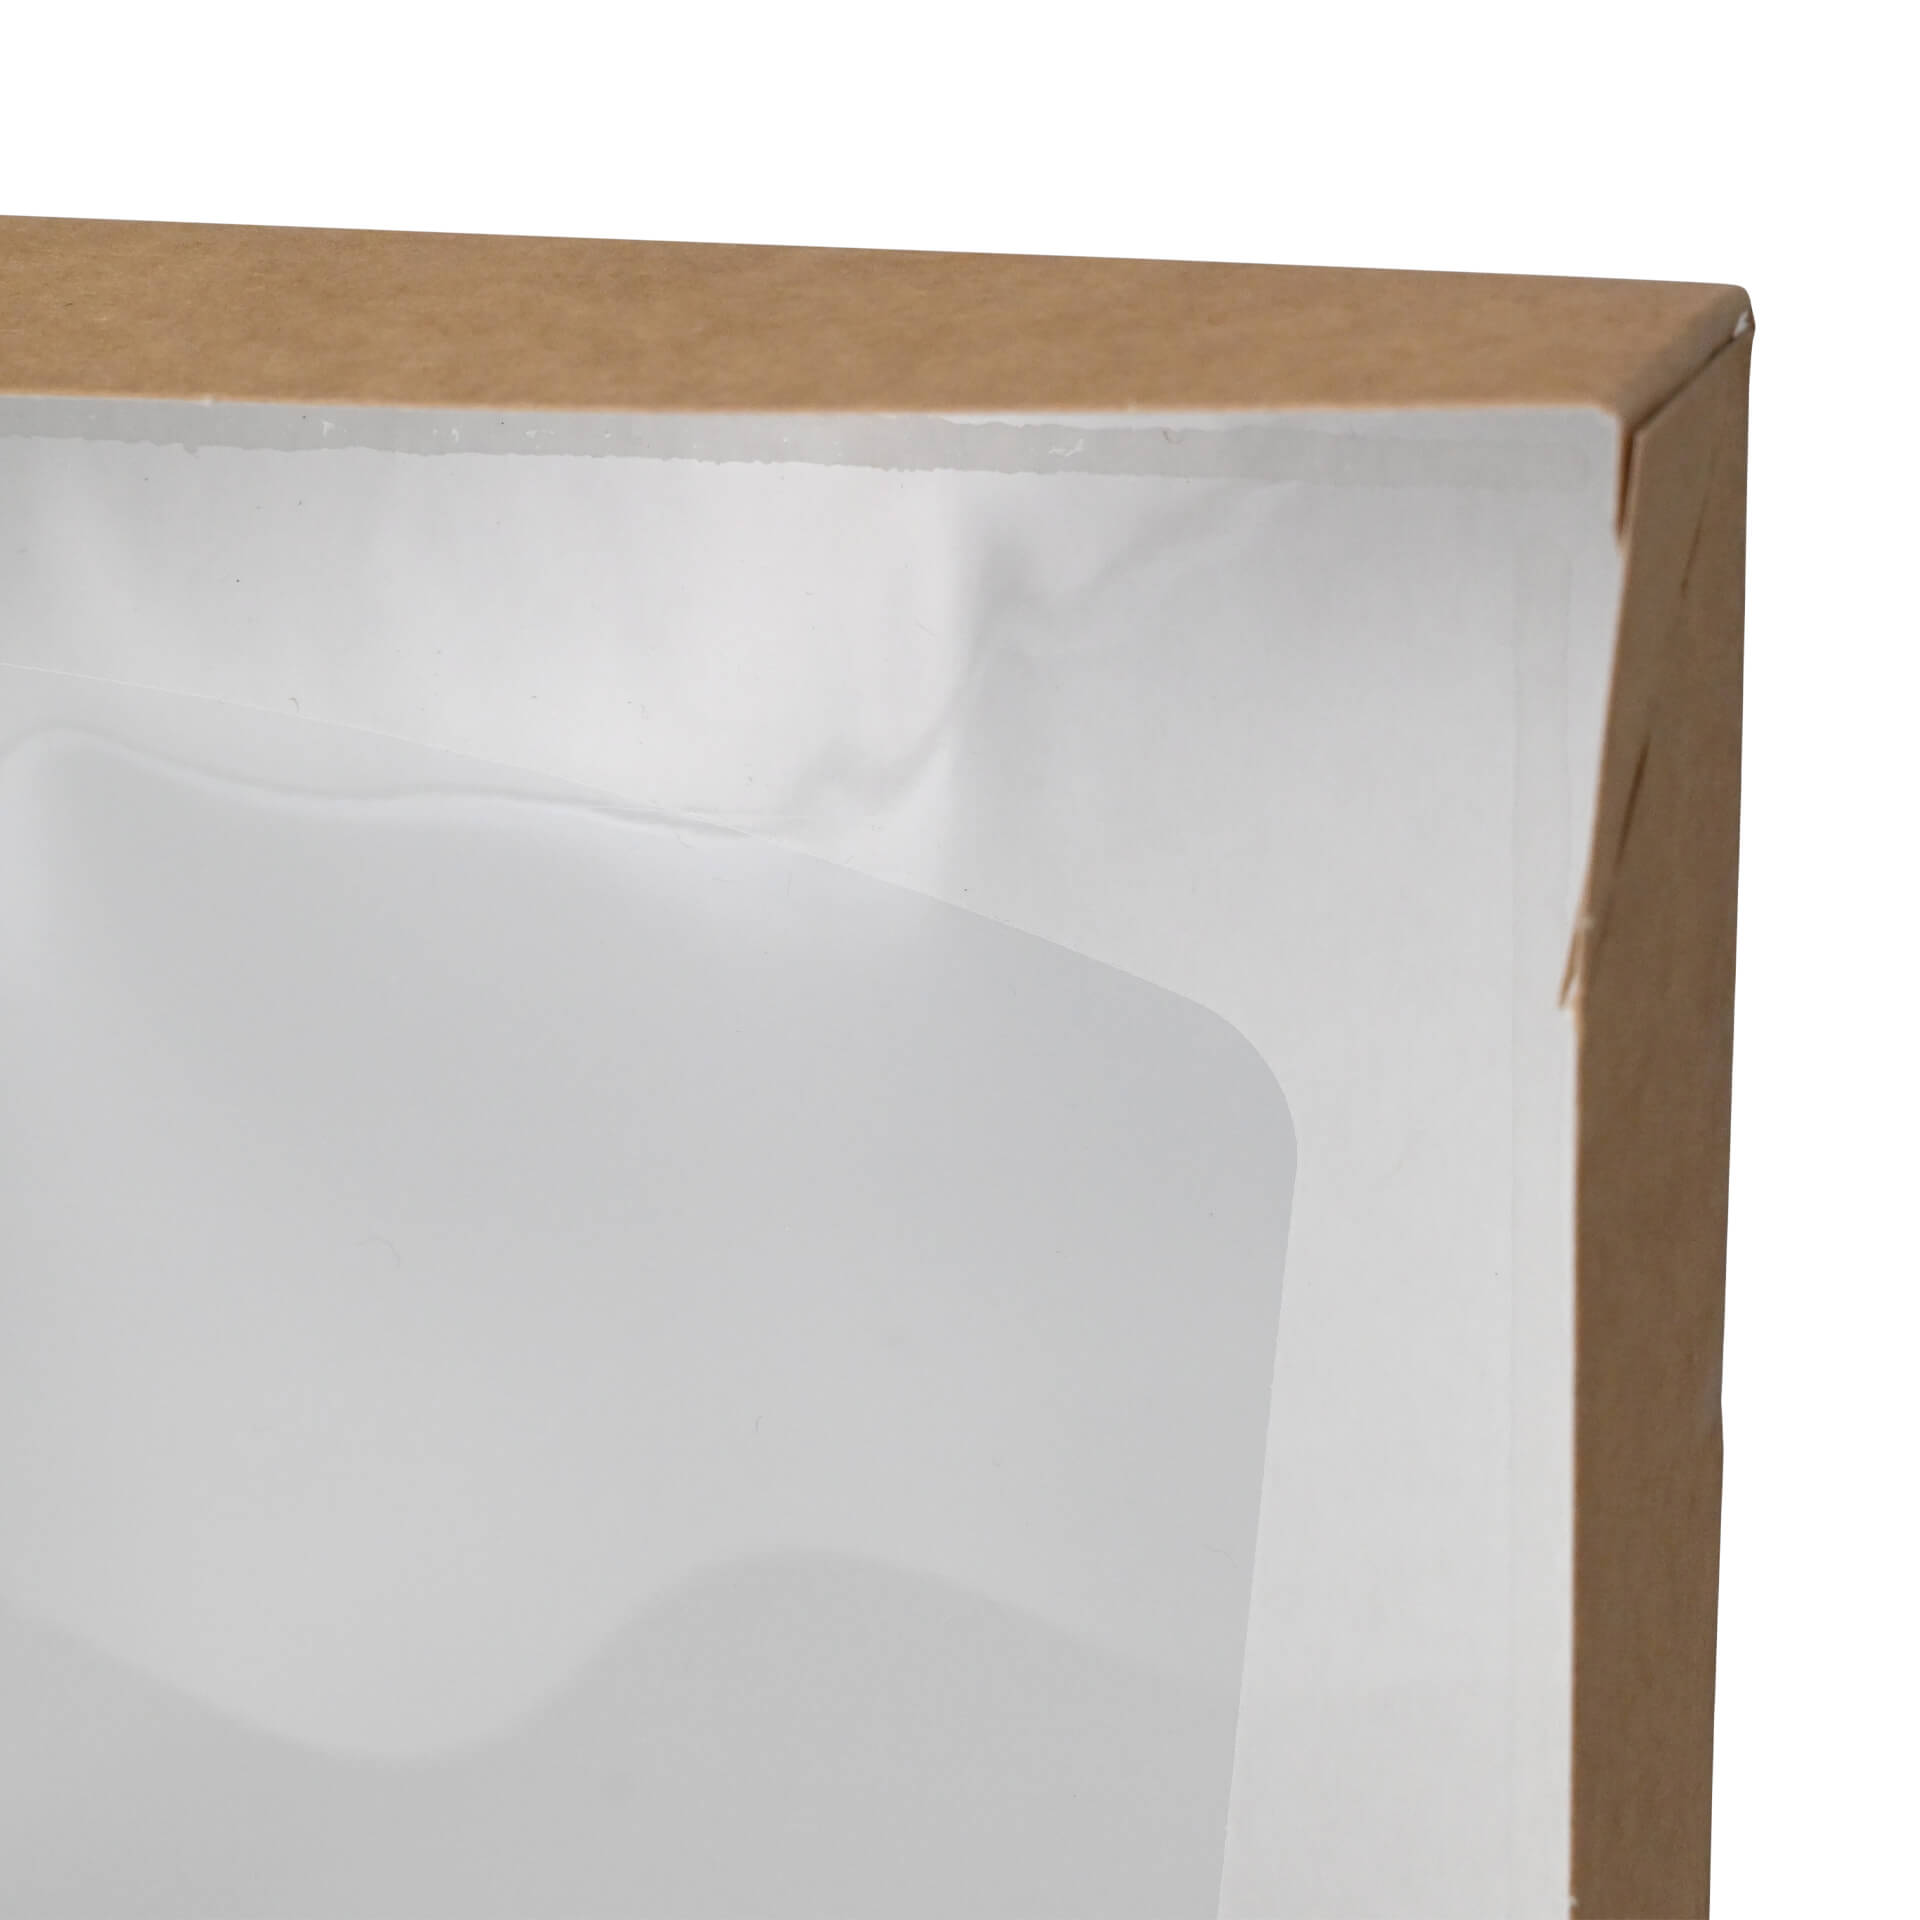 Karton-Sichtfenster-Schachteln 20 x 12 x 4 cm, 900 ml, Zellulose-Fenster, außen braun, innen weiß, faltbar